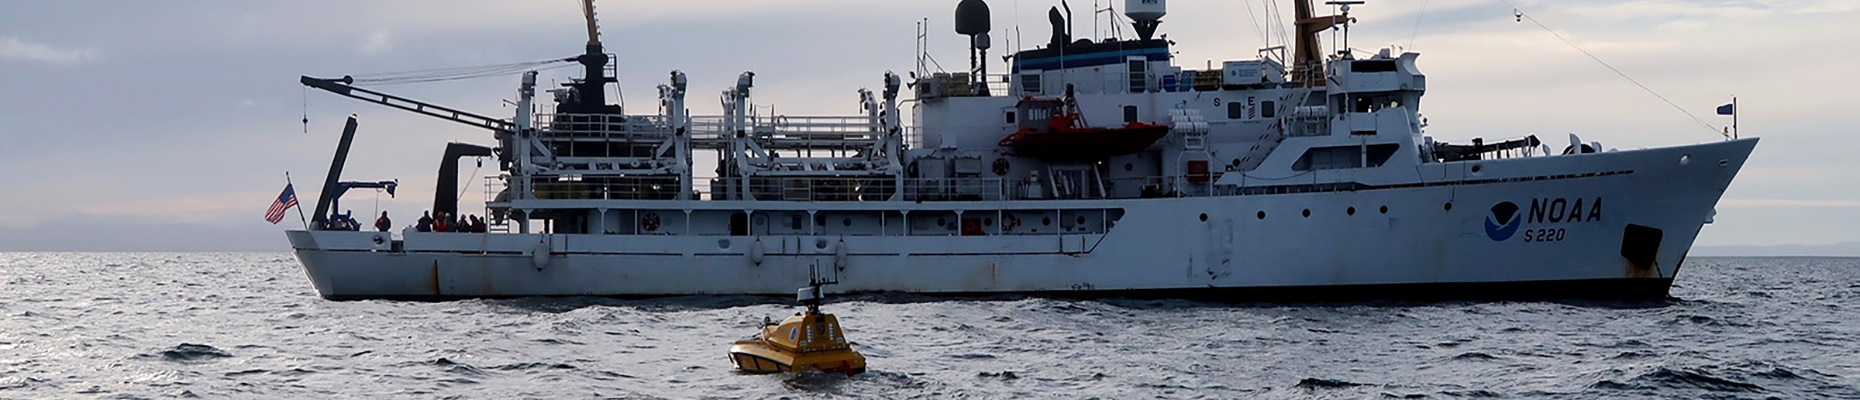 NOAA Ship Fairweather with autonomous surface vessel